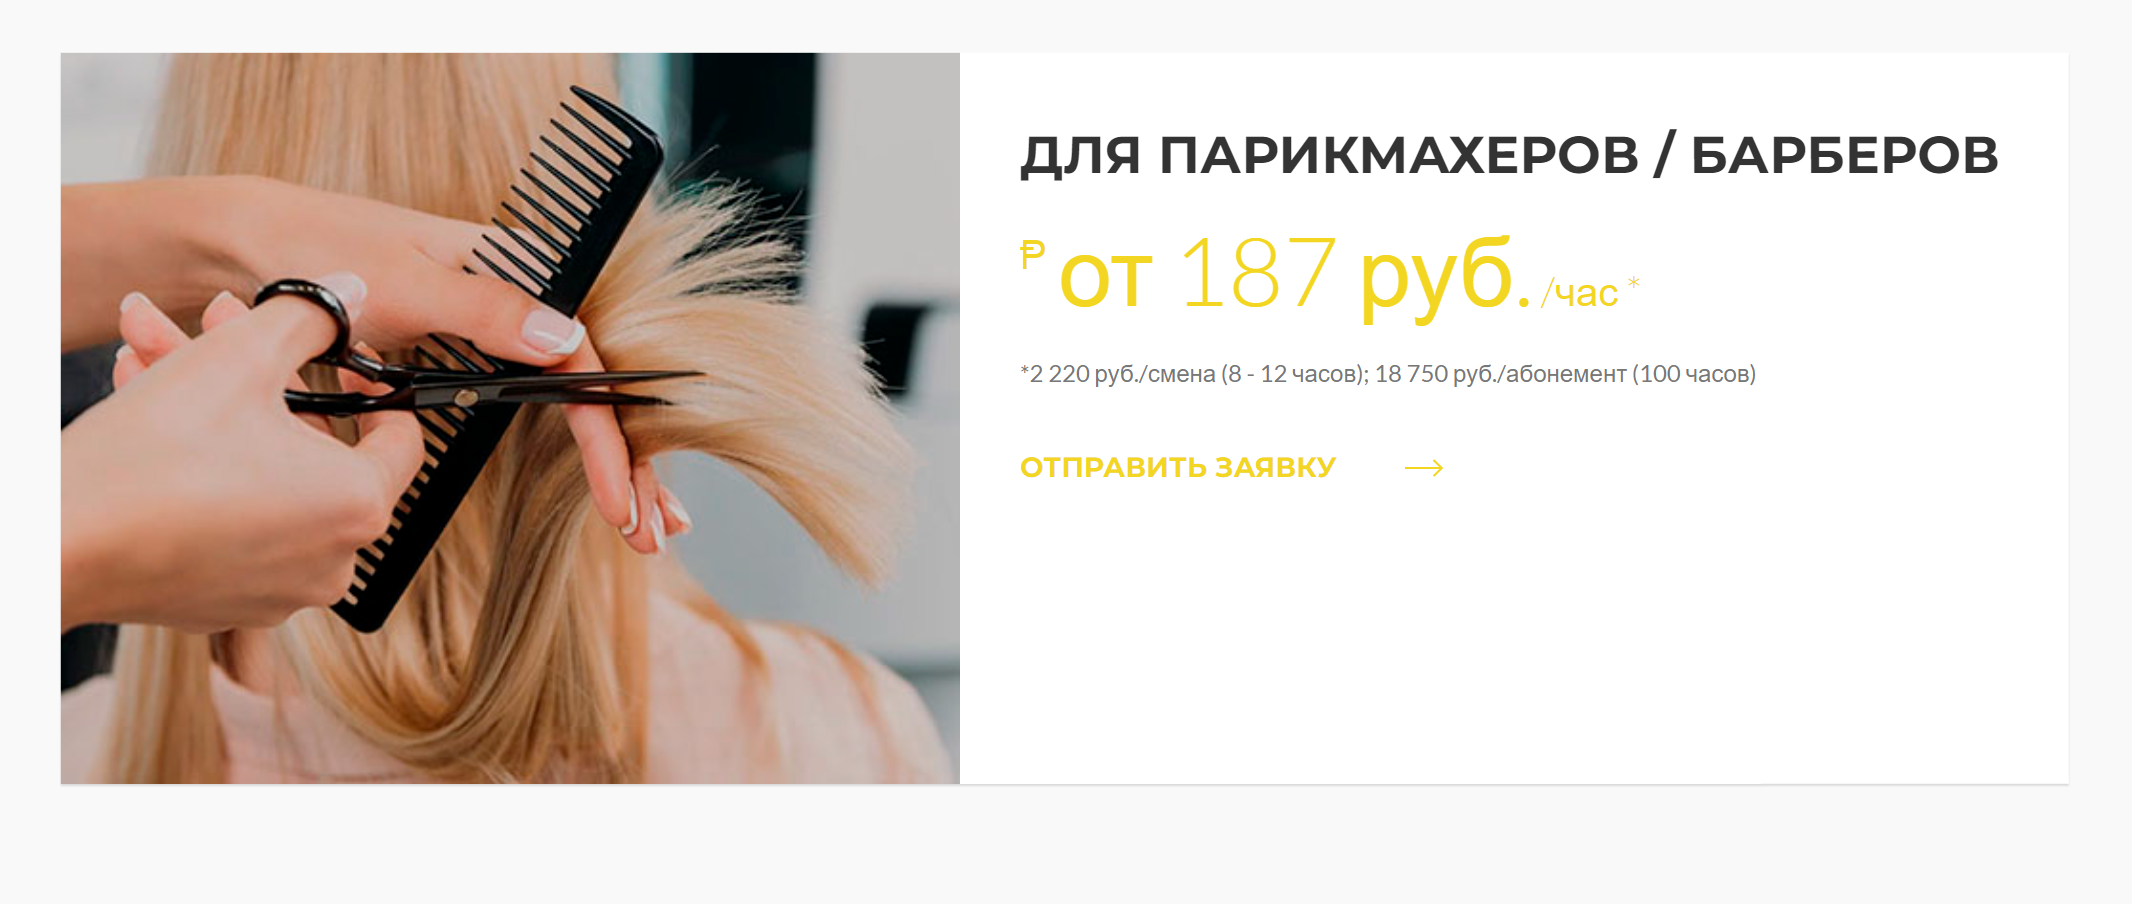 Хороший коворкинг для парикмахеров в Екатеринбурге стоит от 187 ₽ в час, но нужно купить абонемент на 100 часов. Его хватит примерно на полгода работы, если принимать по одному клиенту в день только по выходным. Источник: artcraftcoworking.ru